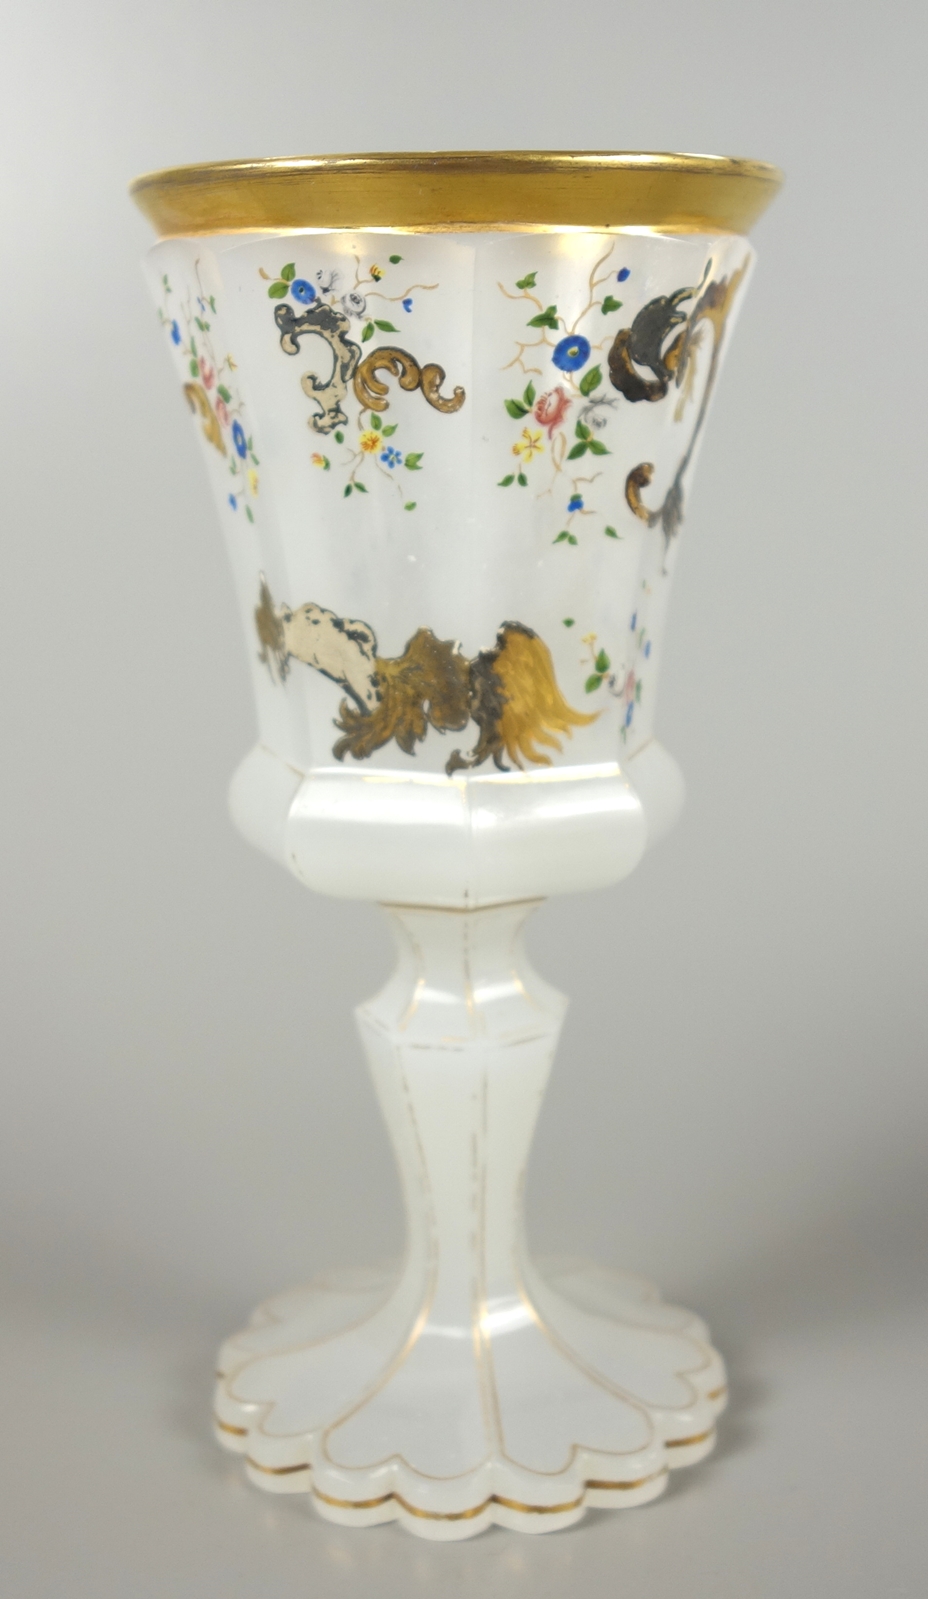 Pokalglas aus Alabasterglas, 19.Jh.gekerbter Stand, facettierter Schaft, Goldkonturen, facet - Image 2 of 3